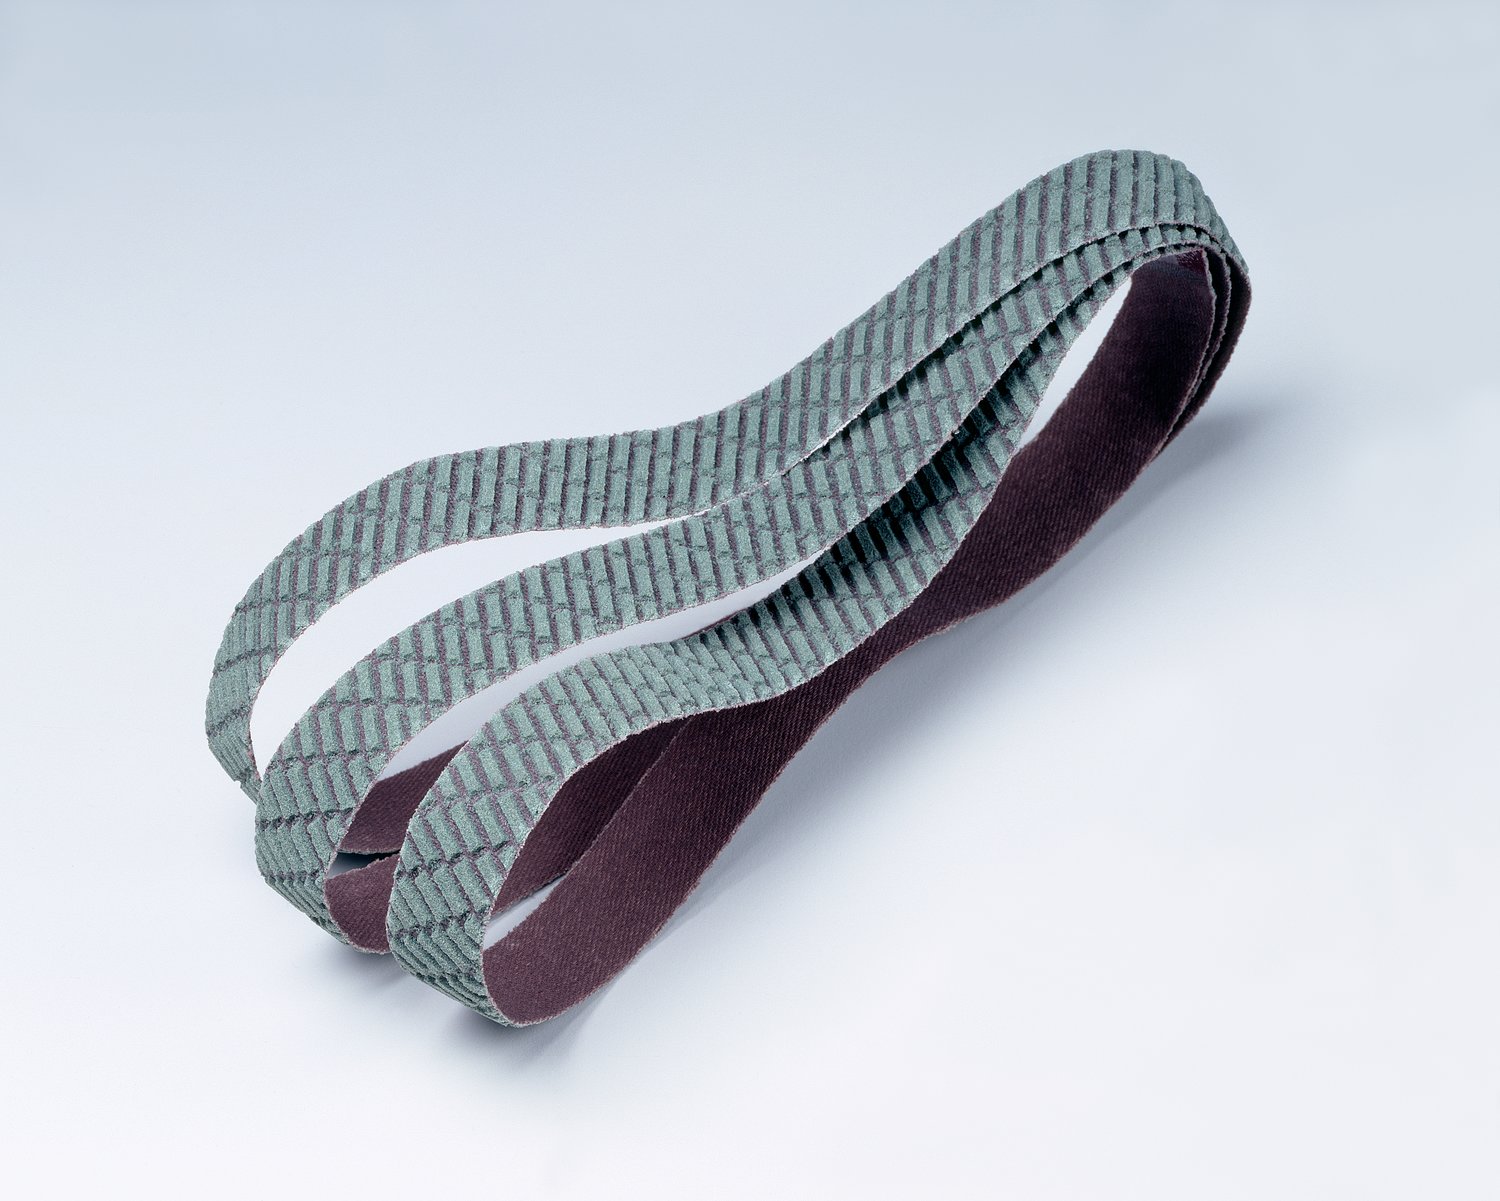 7010512349 - 3M Trizact Cloth Belt 327DC, A45 X-weight, 3 in x 72 in, Film-lok, No
Flex